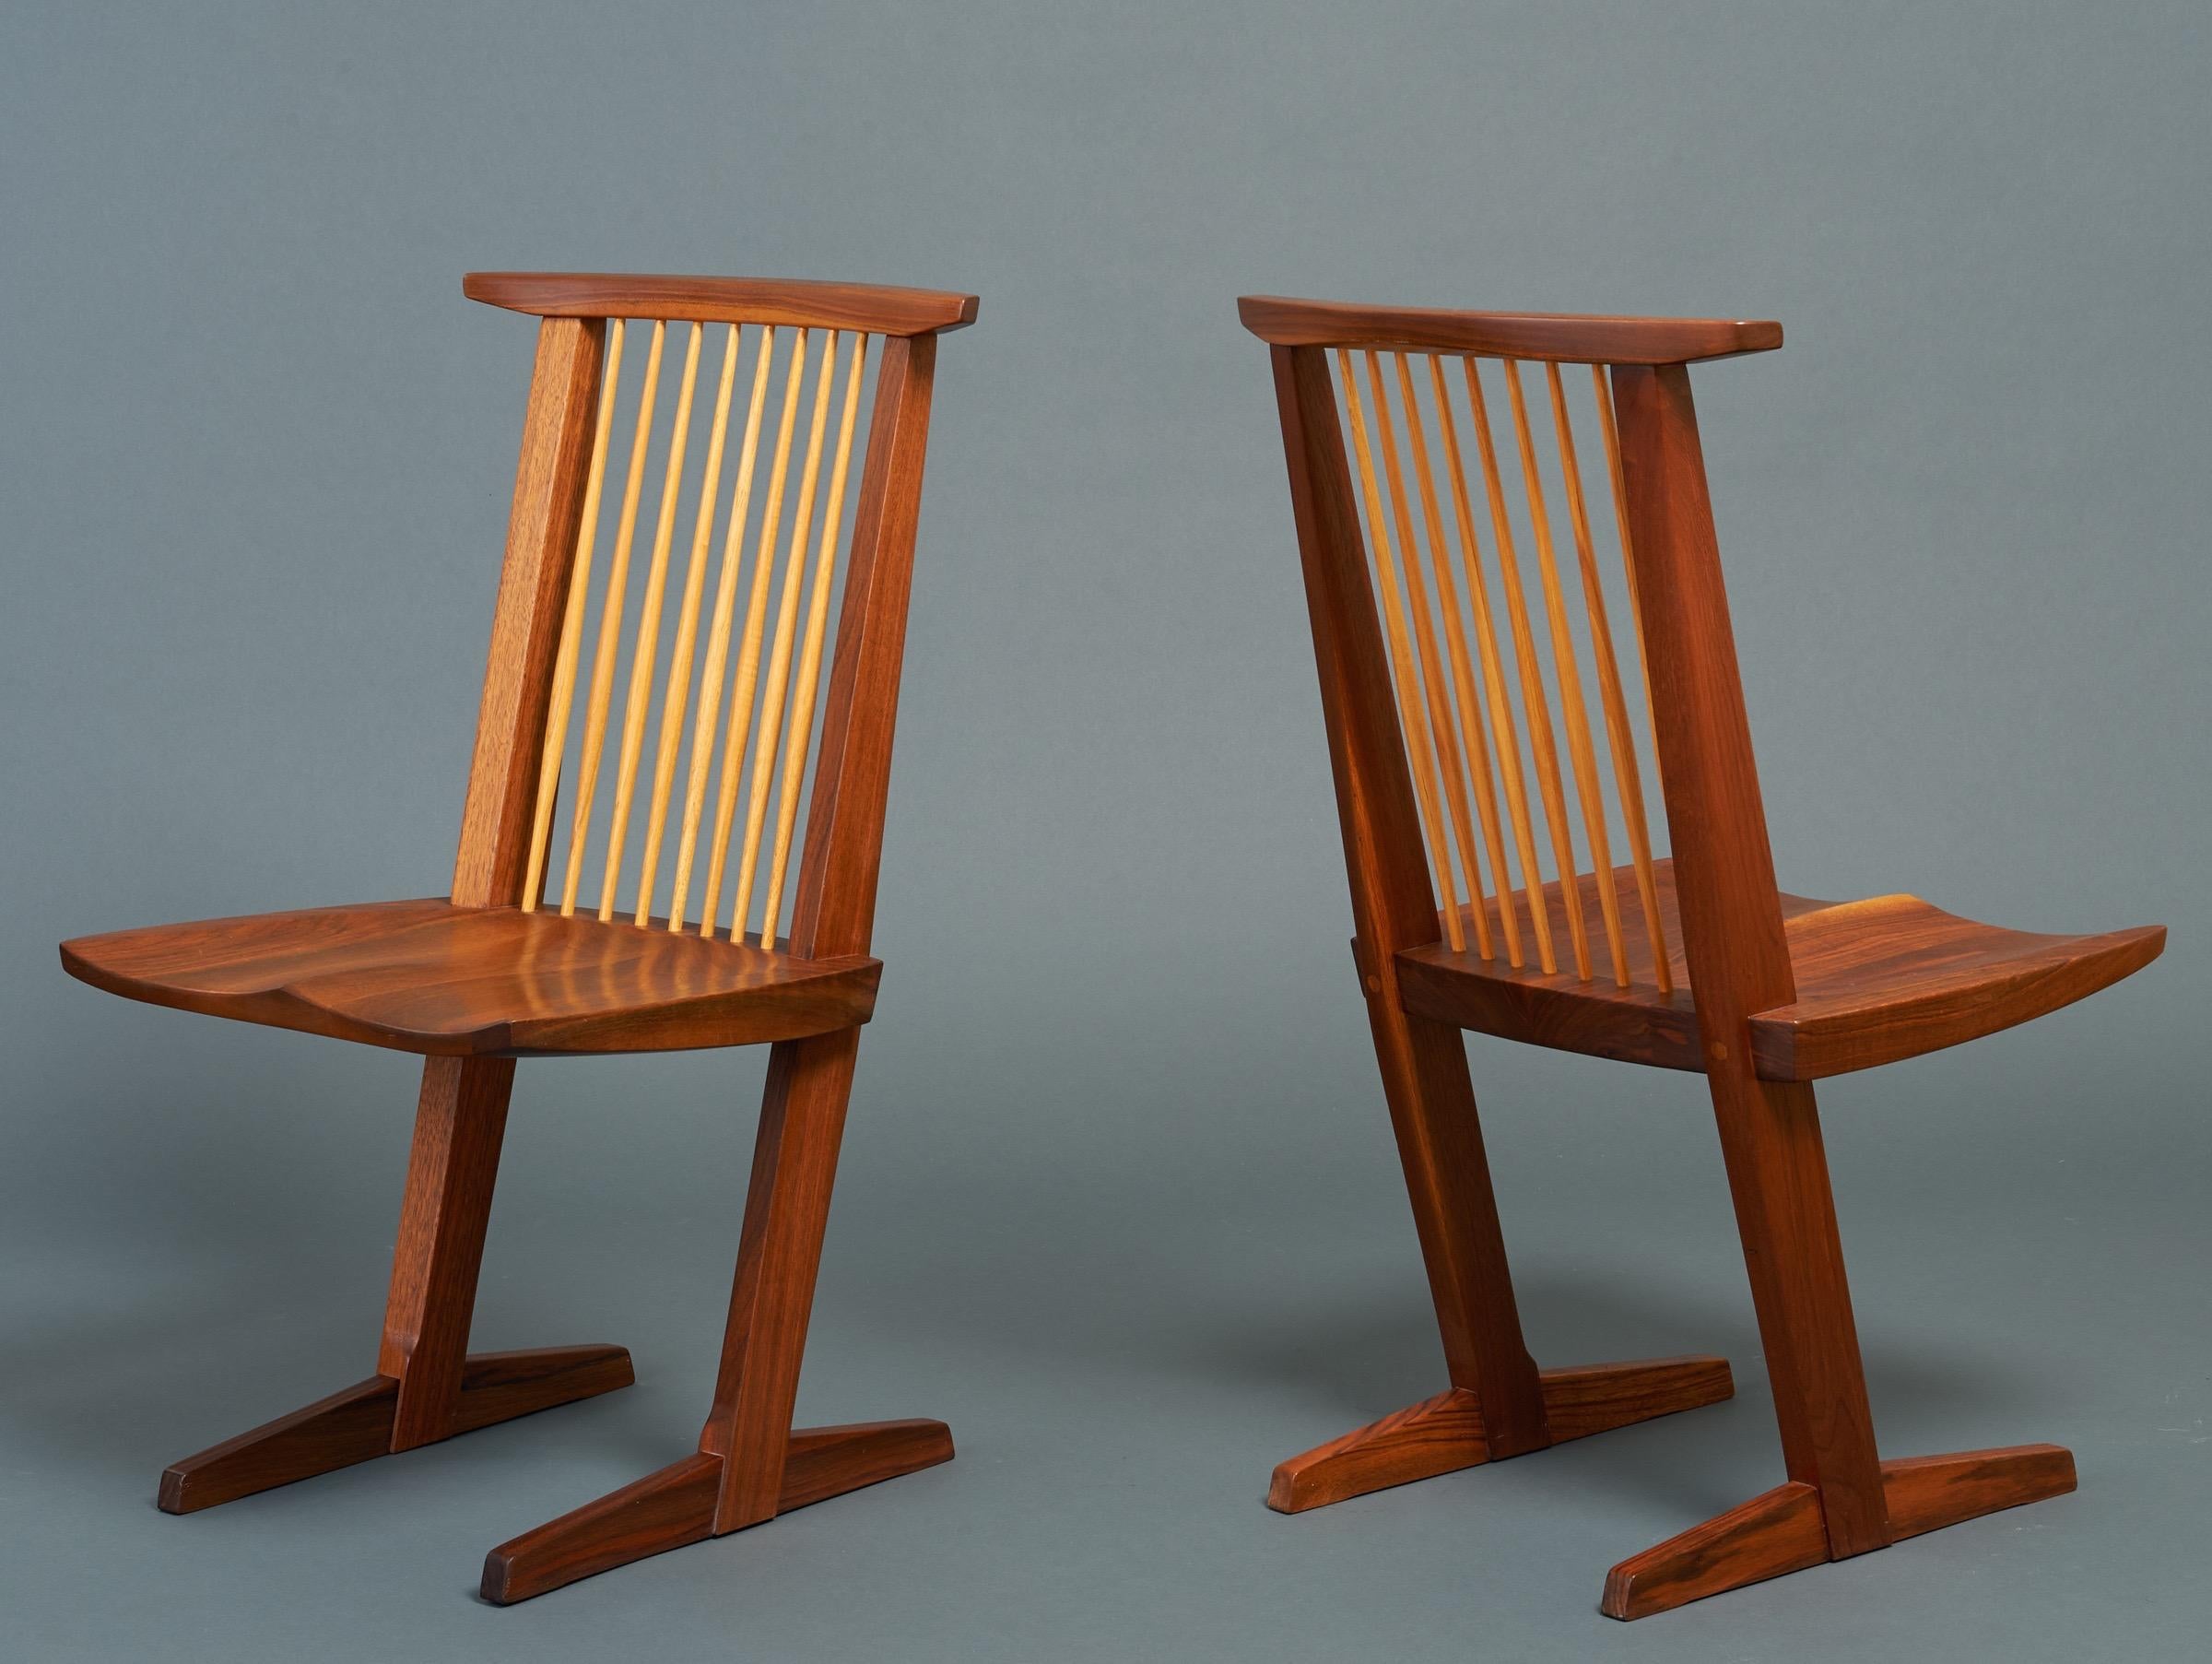 George Nakashima (1905-1990) 

Ein außergewöhnliches Paar Conoid-Stühle des Patriarchen der Studio-Craft-Bewegung in Pennsylvania, George Nakashima, die zu den letzten gehören, die er vor seinem Tod schuf. Aus geschnitztem schwarzem Nussbaum, der